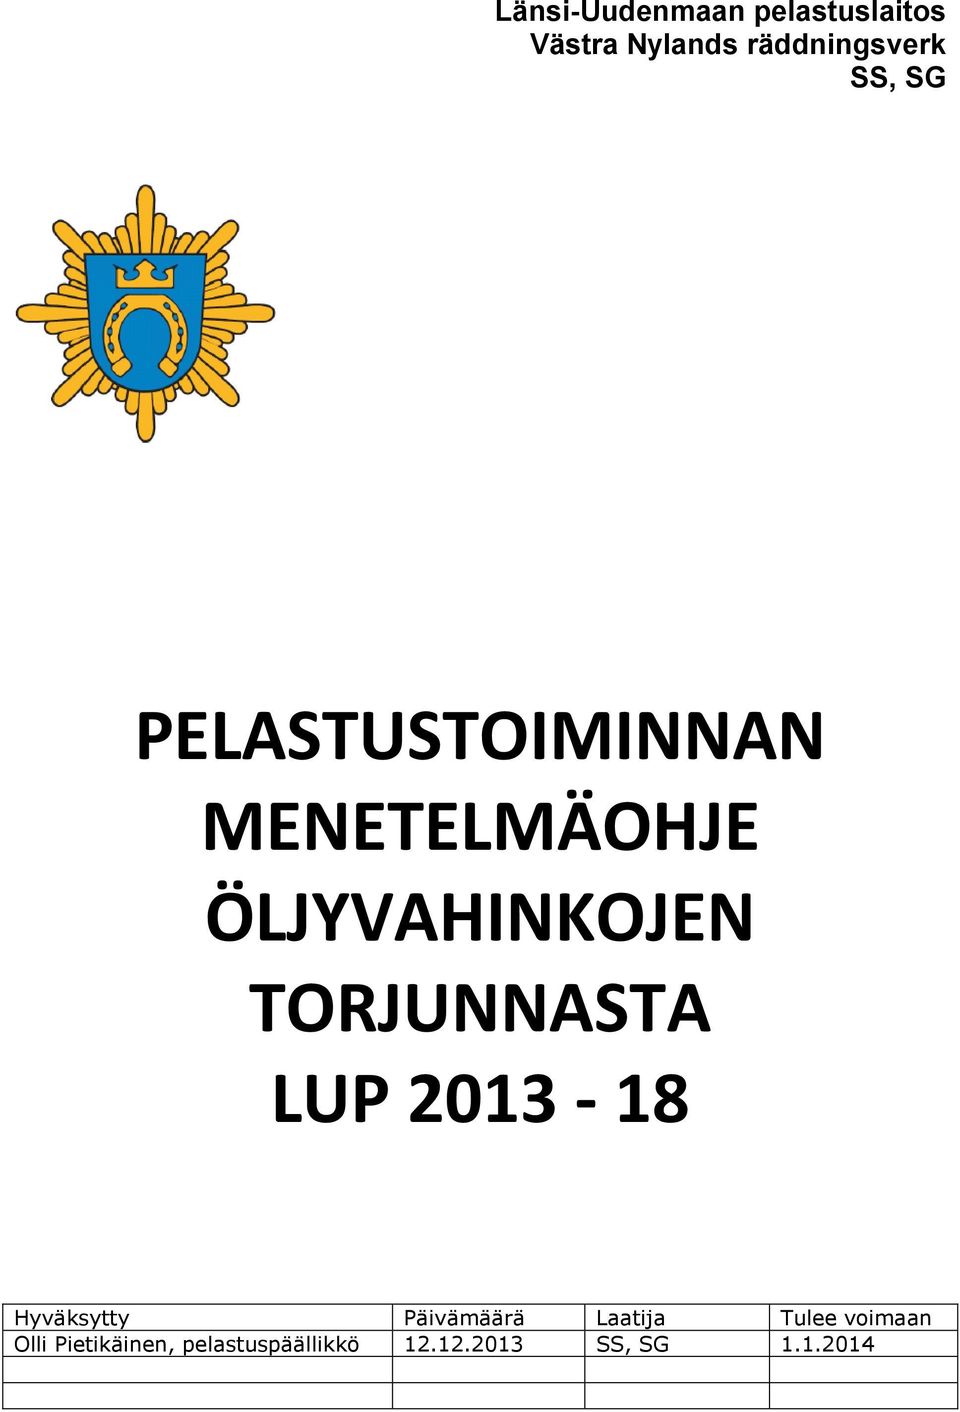 TORJUNNASTA LUP 2013-18 Hyväksytty Päivämäärä Laatija Tulee